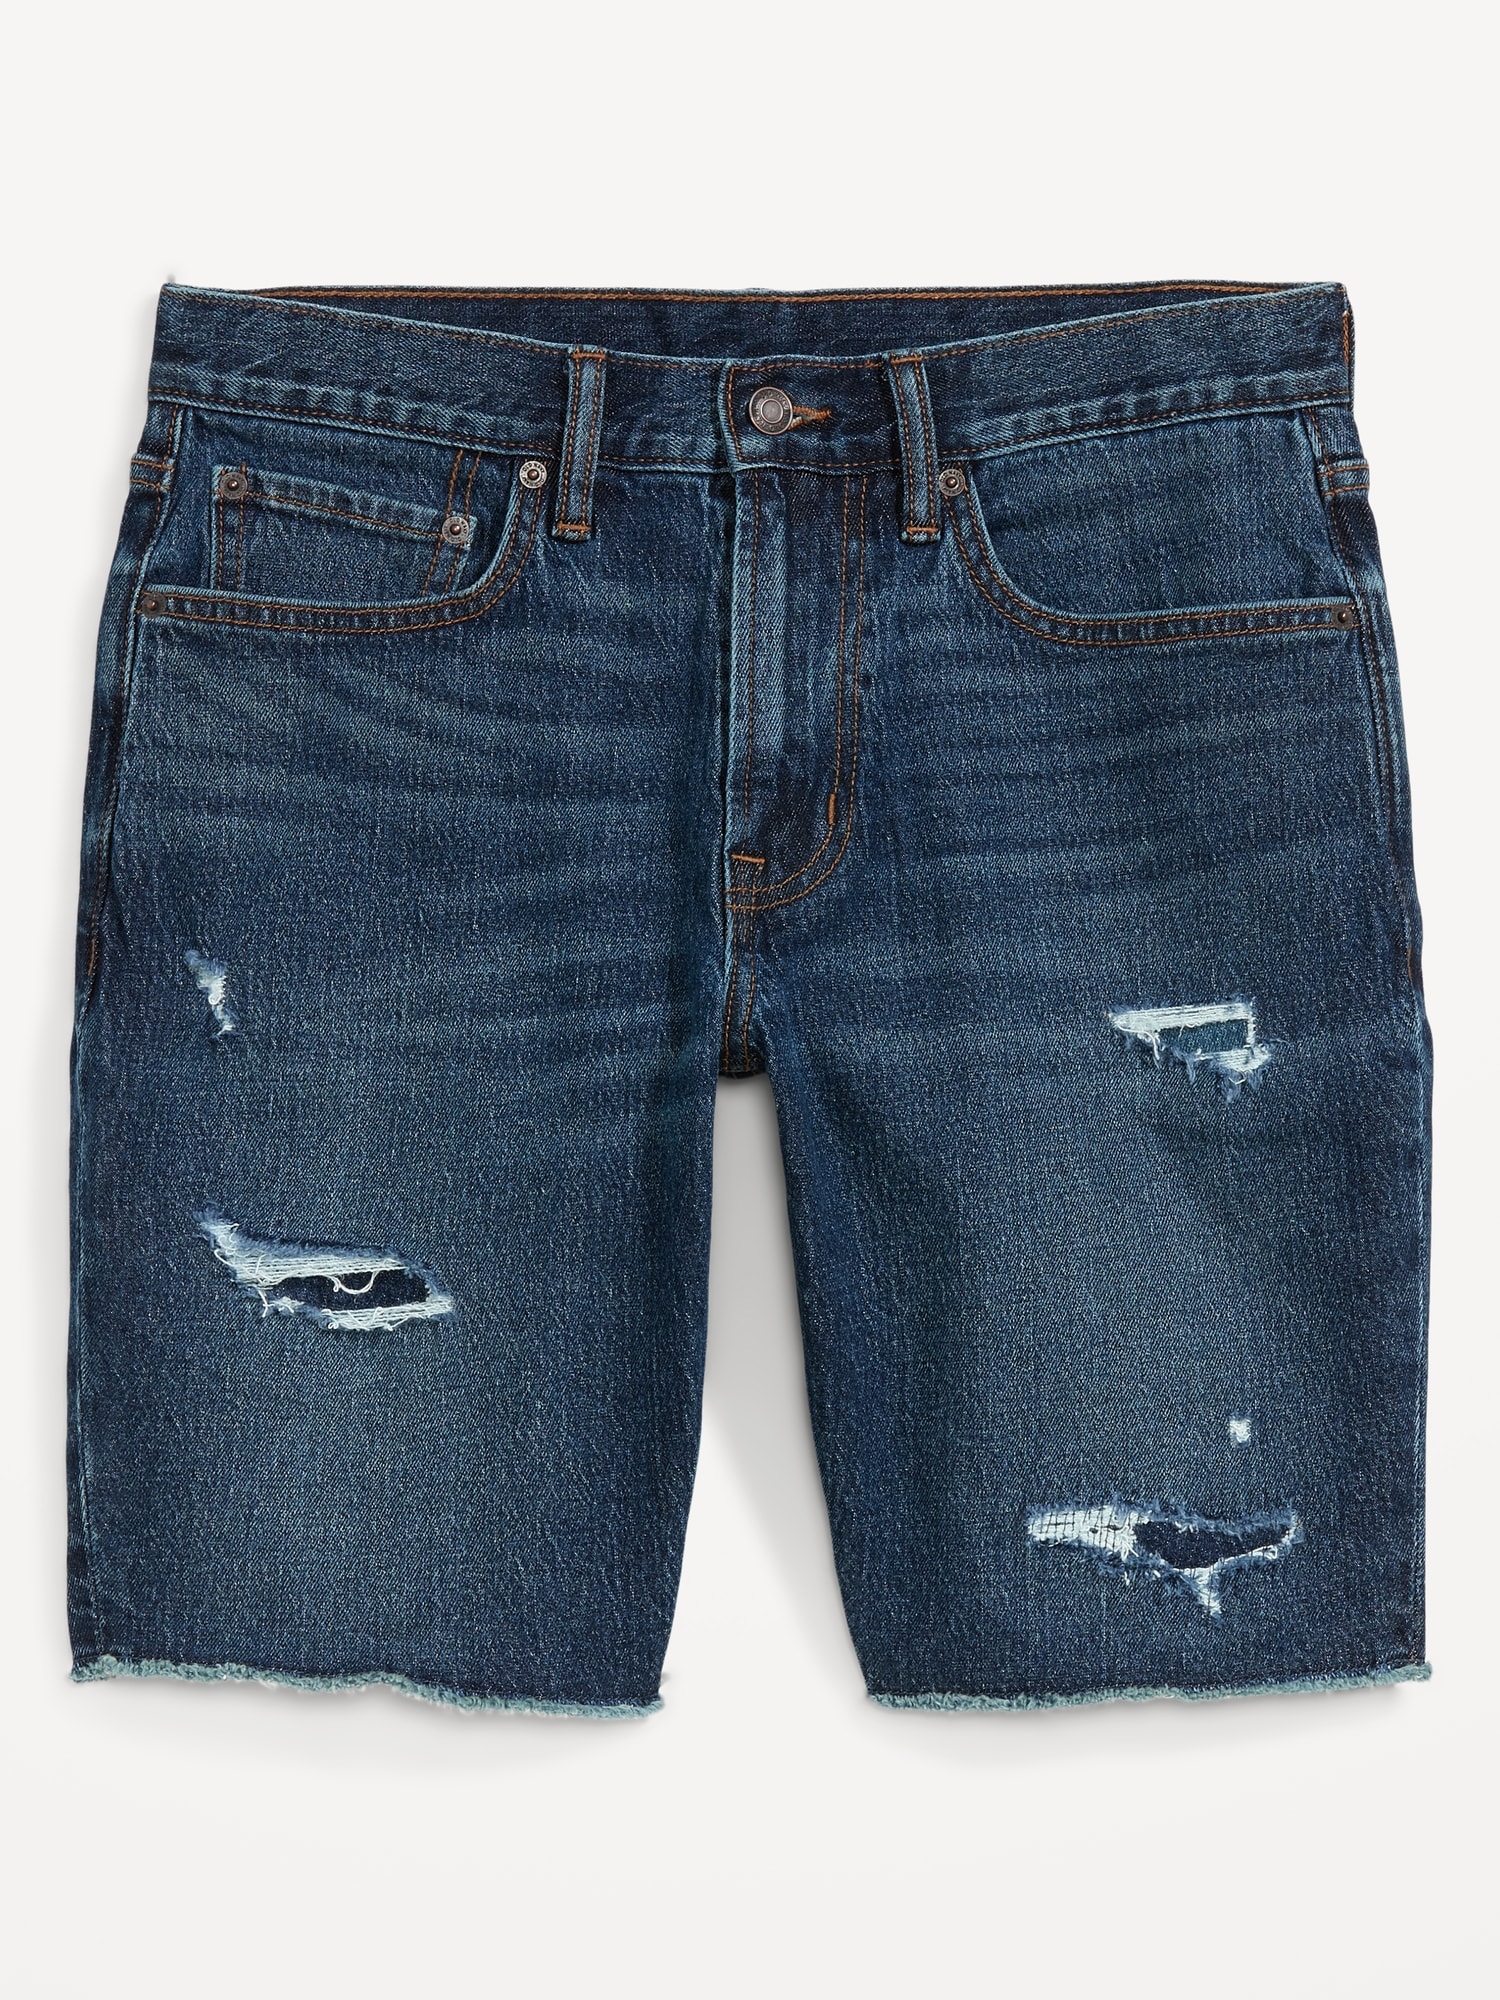 Baggy Denim Shorts for Men Hip Hop Bermuda Jeans - Blue-suu.vn